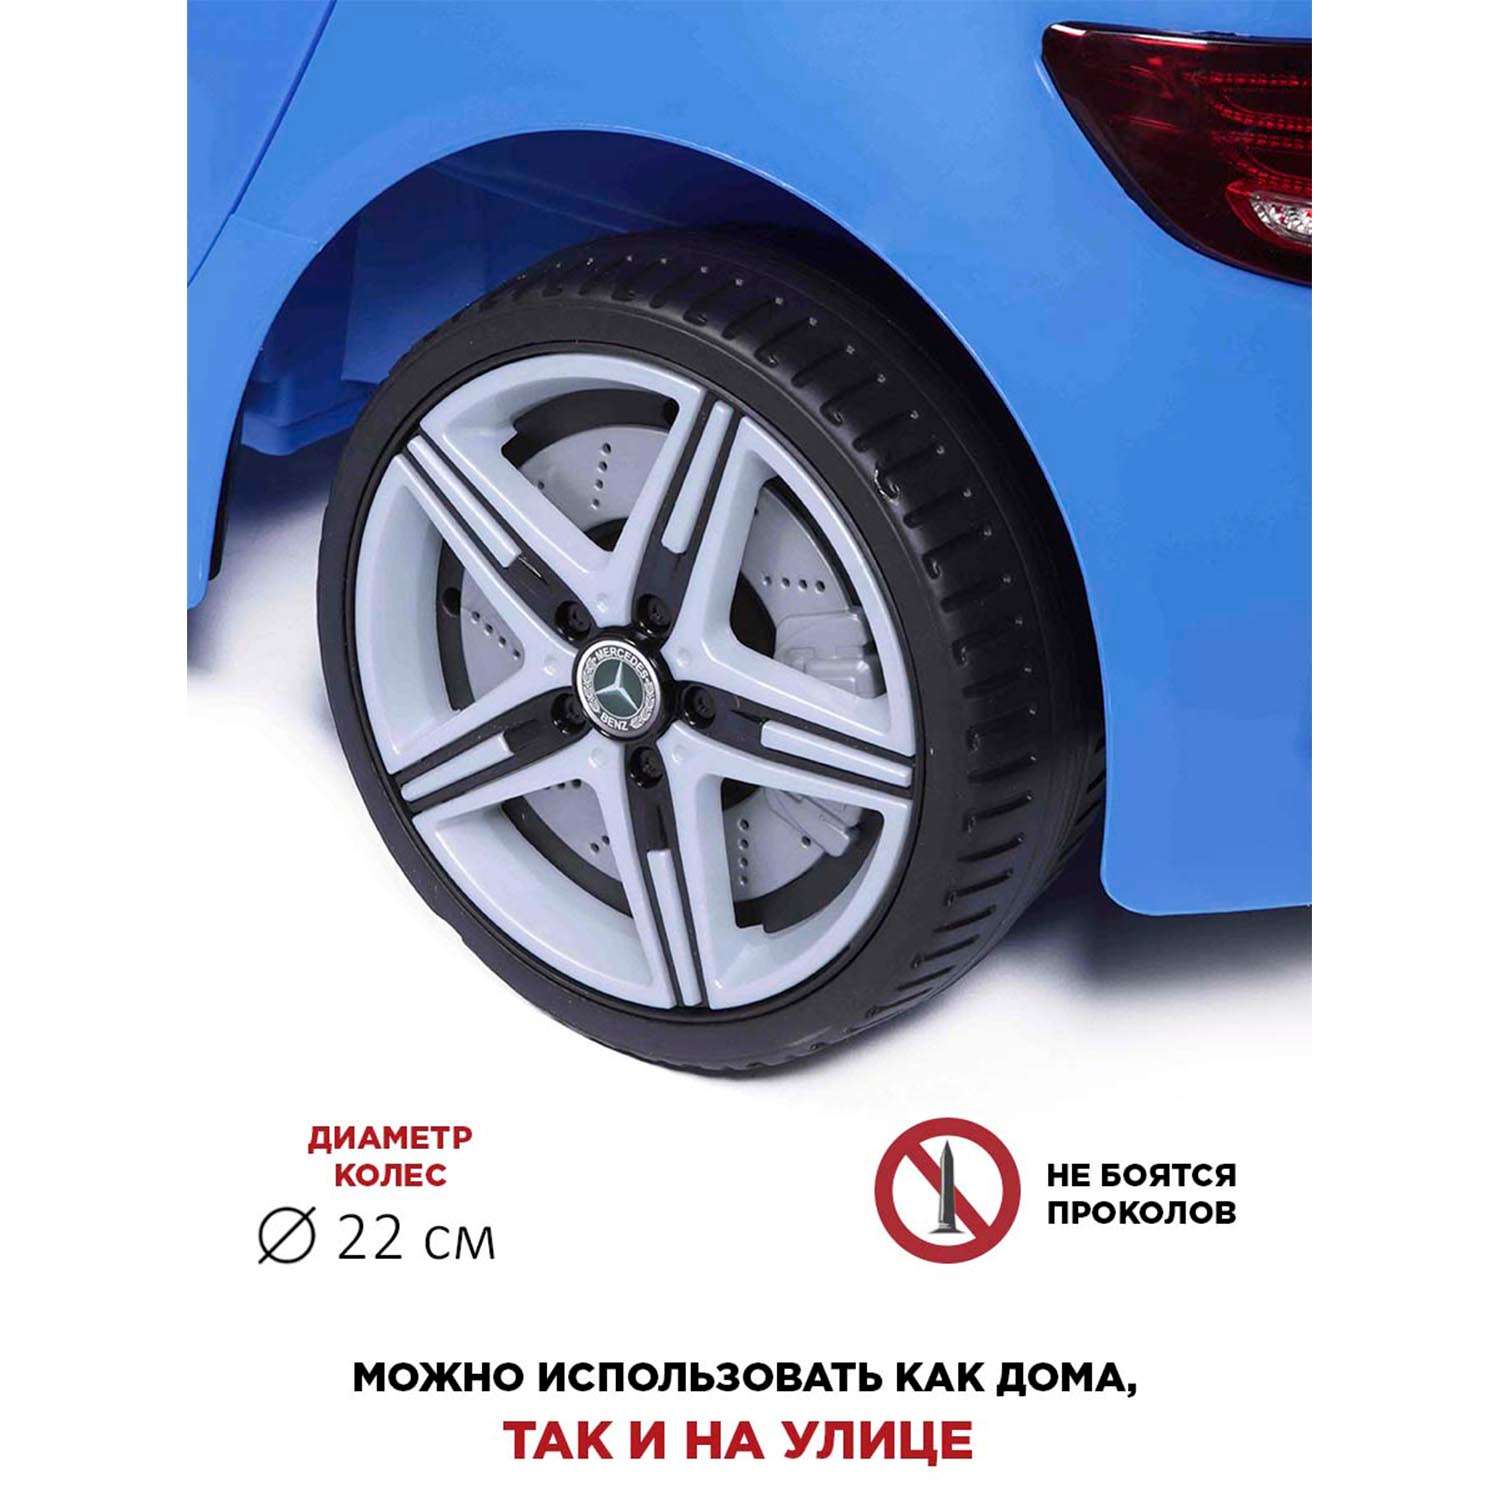 Электромобиль BabyCare Mercedes резиновые колеса синий - фото 12